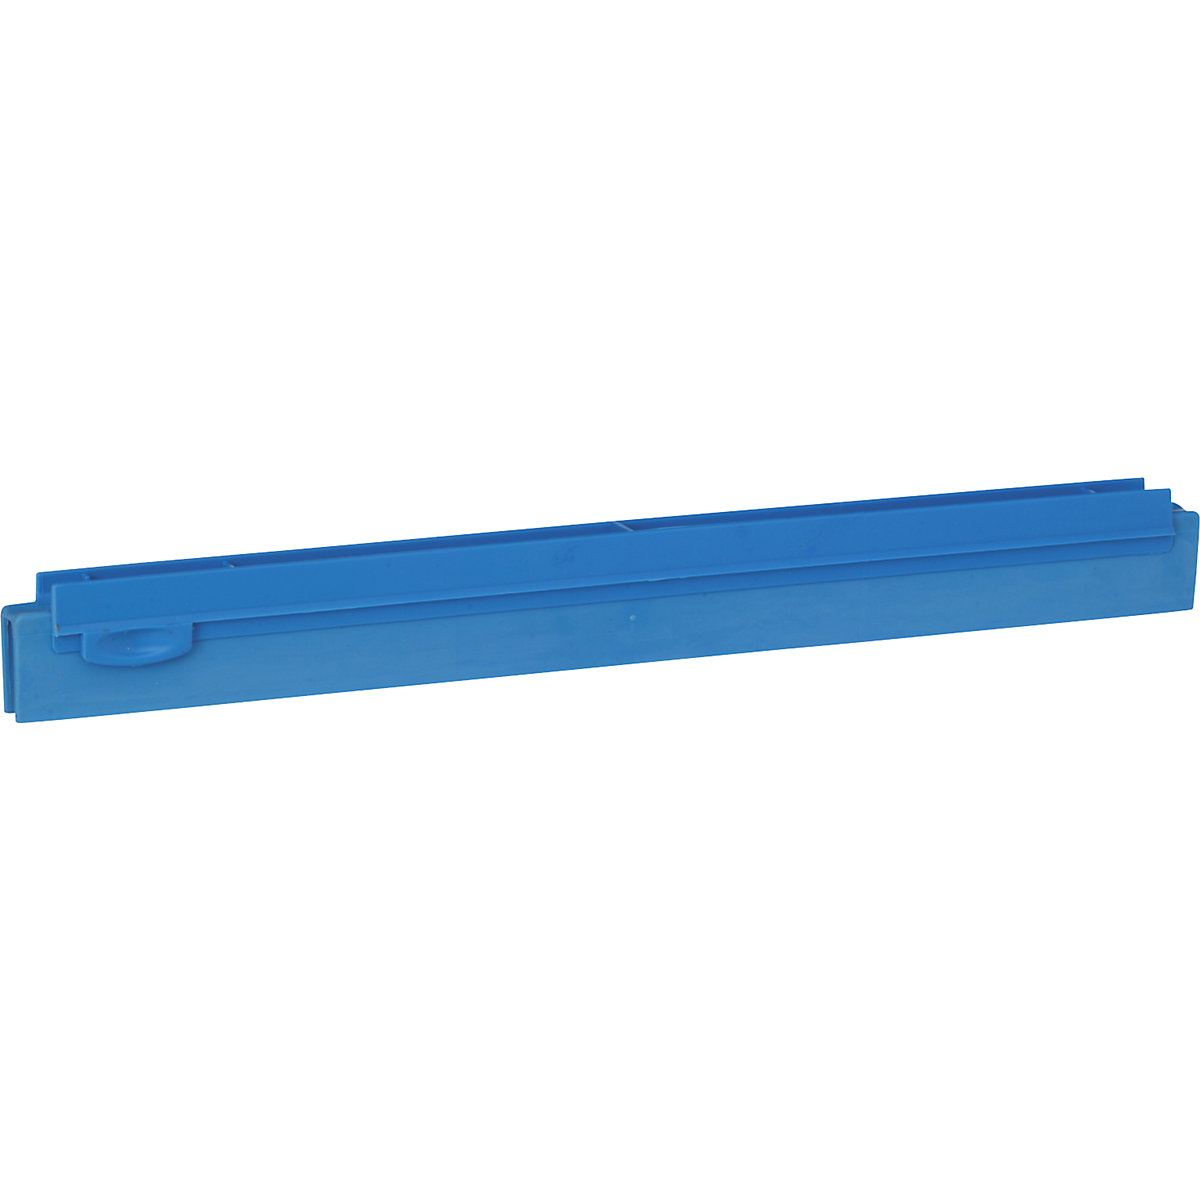 Zamjenska kaseta, higijenska – Vikan, dužina 400 mm, pak. 10 kom., u plavoj boji